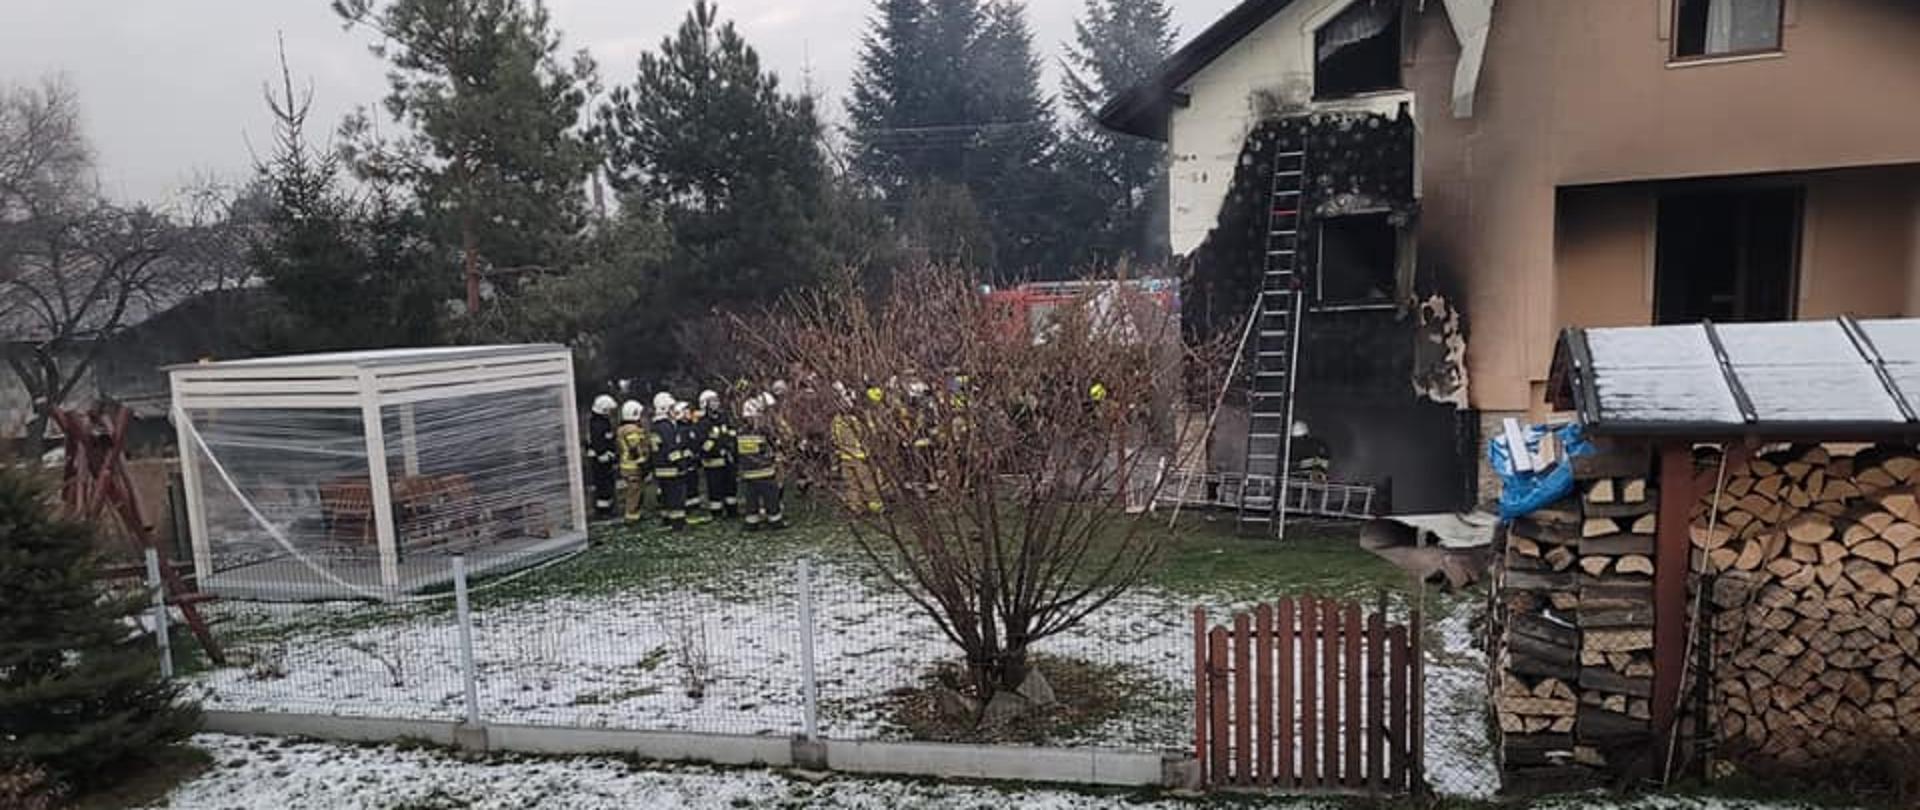 Siedem zastępów straży pożarnej brało wczoraj udział w akcji gaśniczej pożaru budynku mieszkalnego w Kobiernicach.